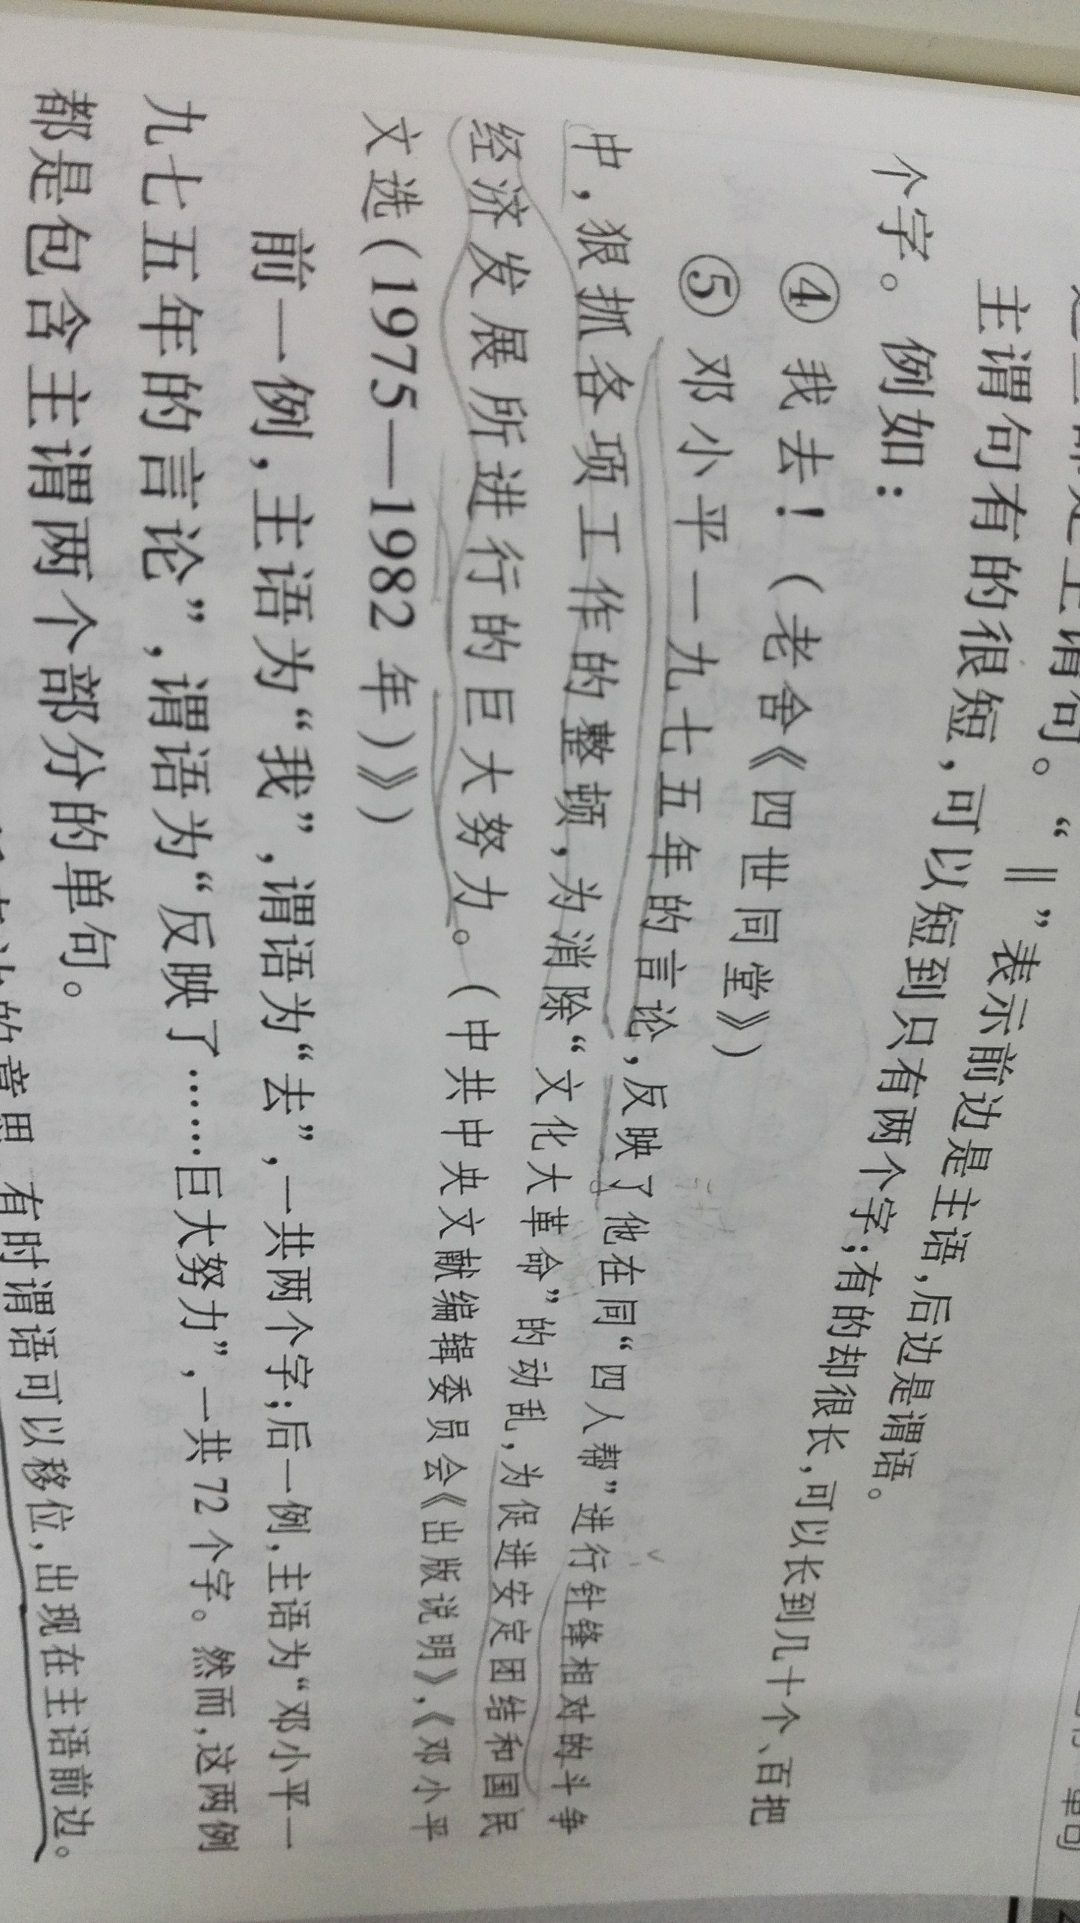 现代汉语语法中关于谓语和宾语的划分? - 匿名